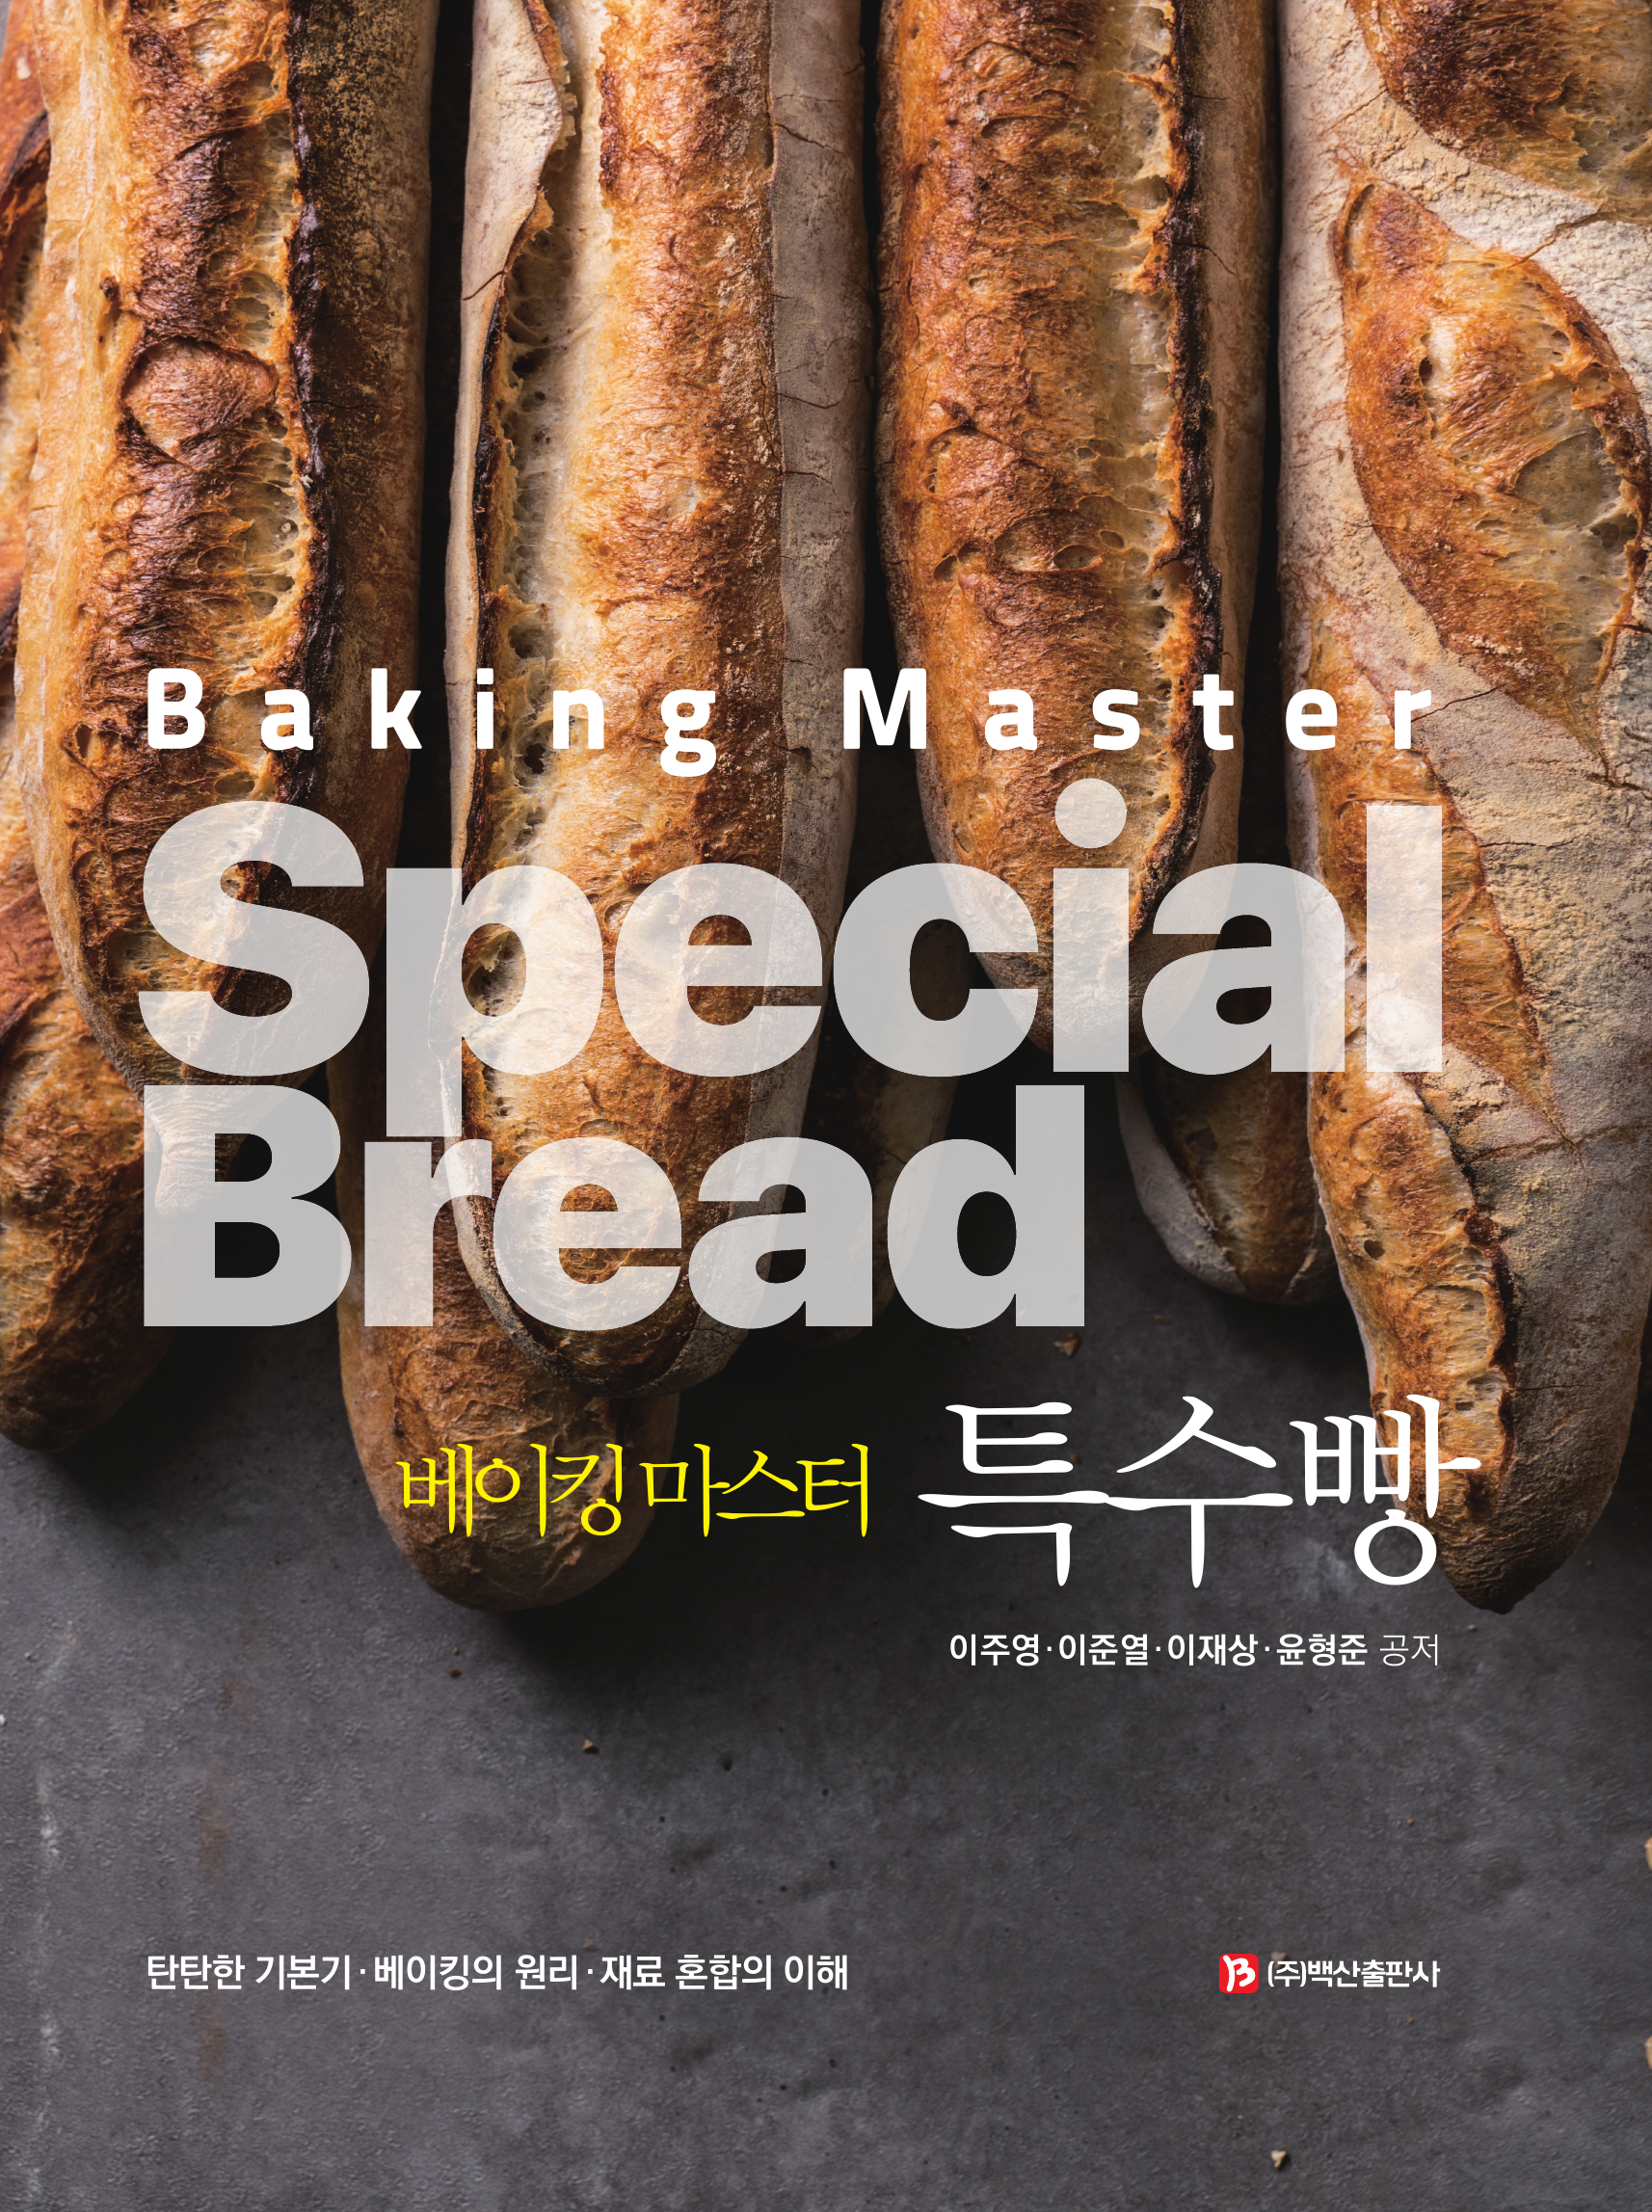 베이킹 마스터 특수빵